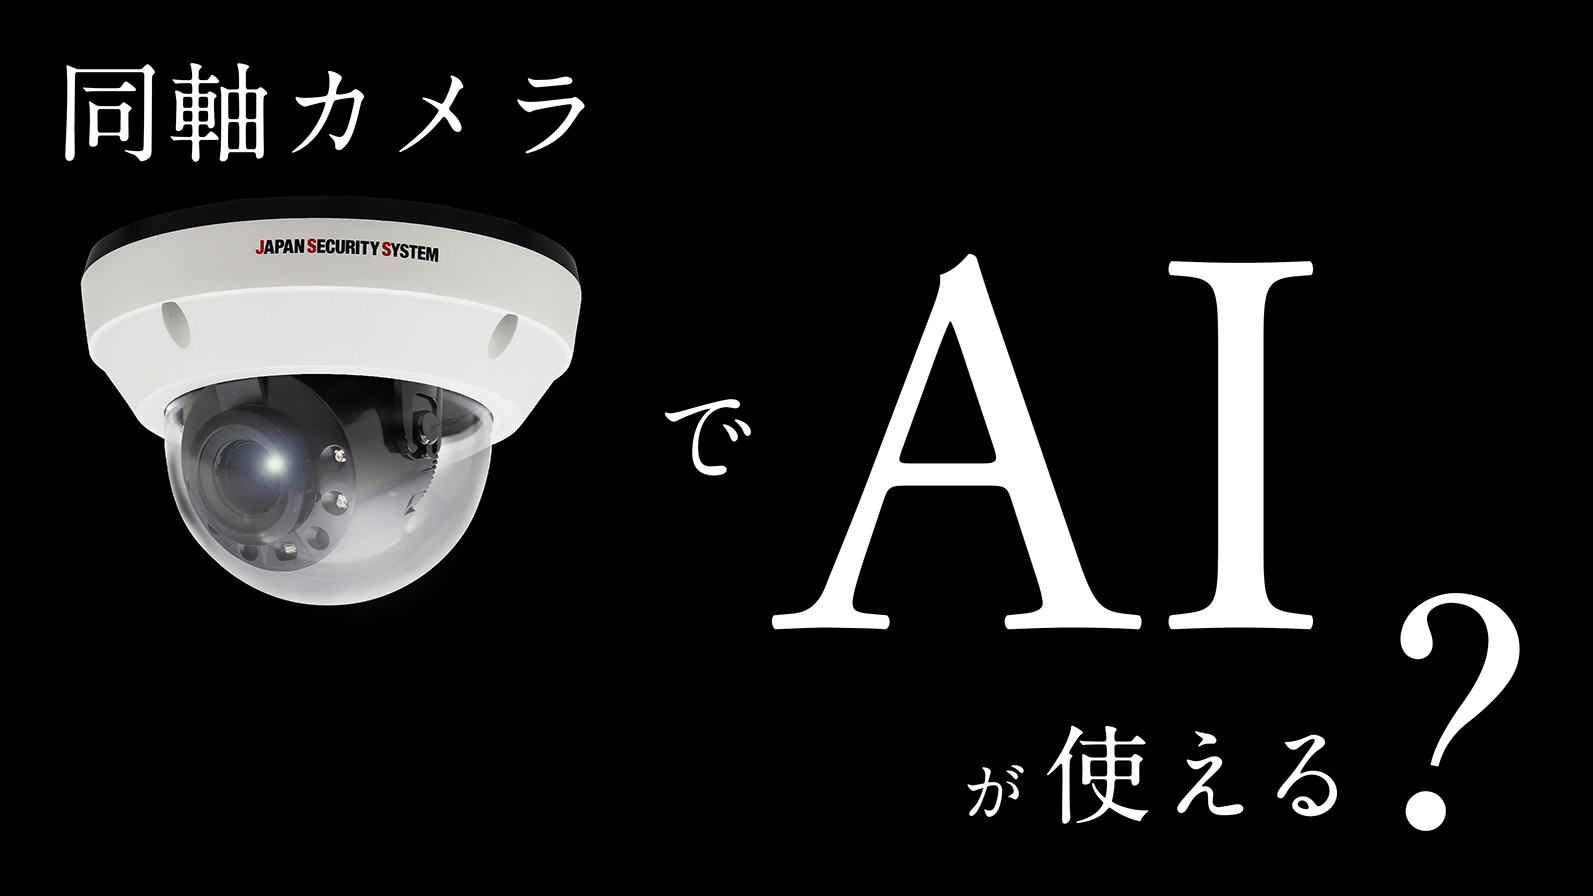 アナログHDカメラでもAI画像解析が使える | 同軸 × AI